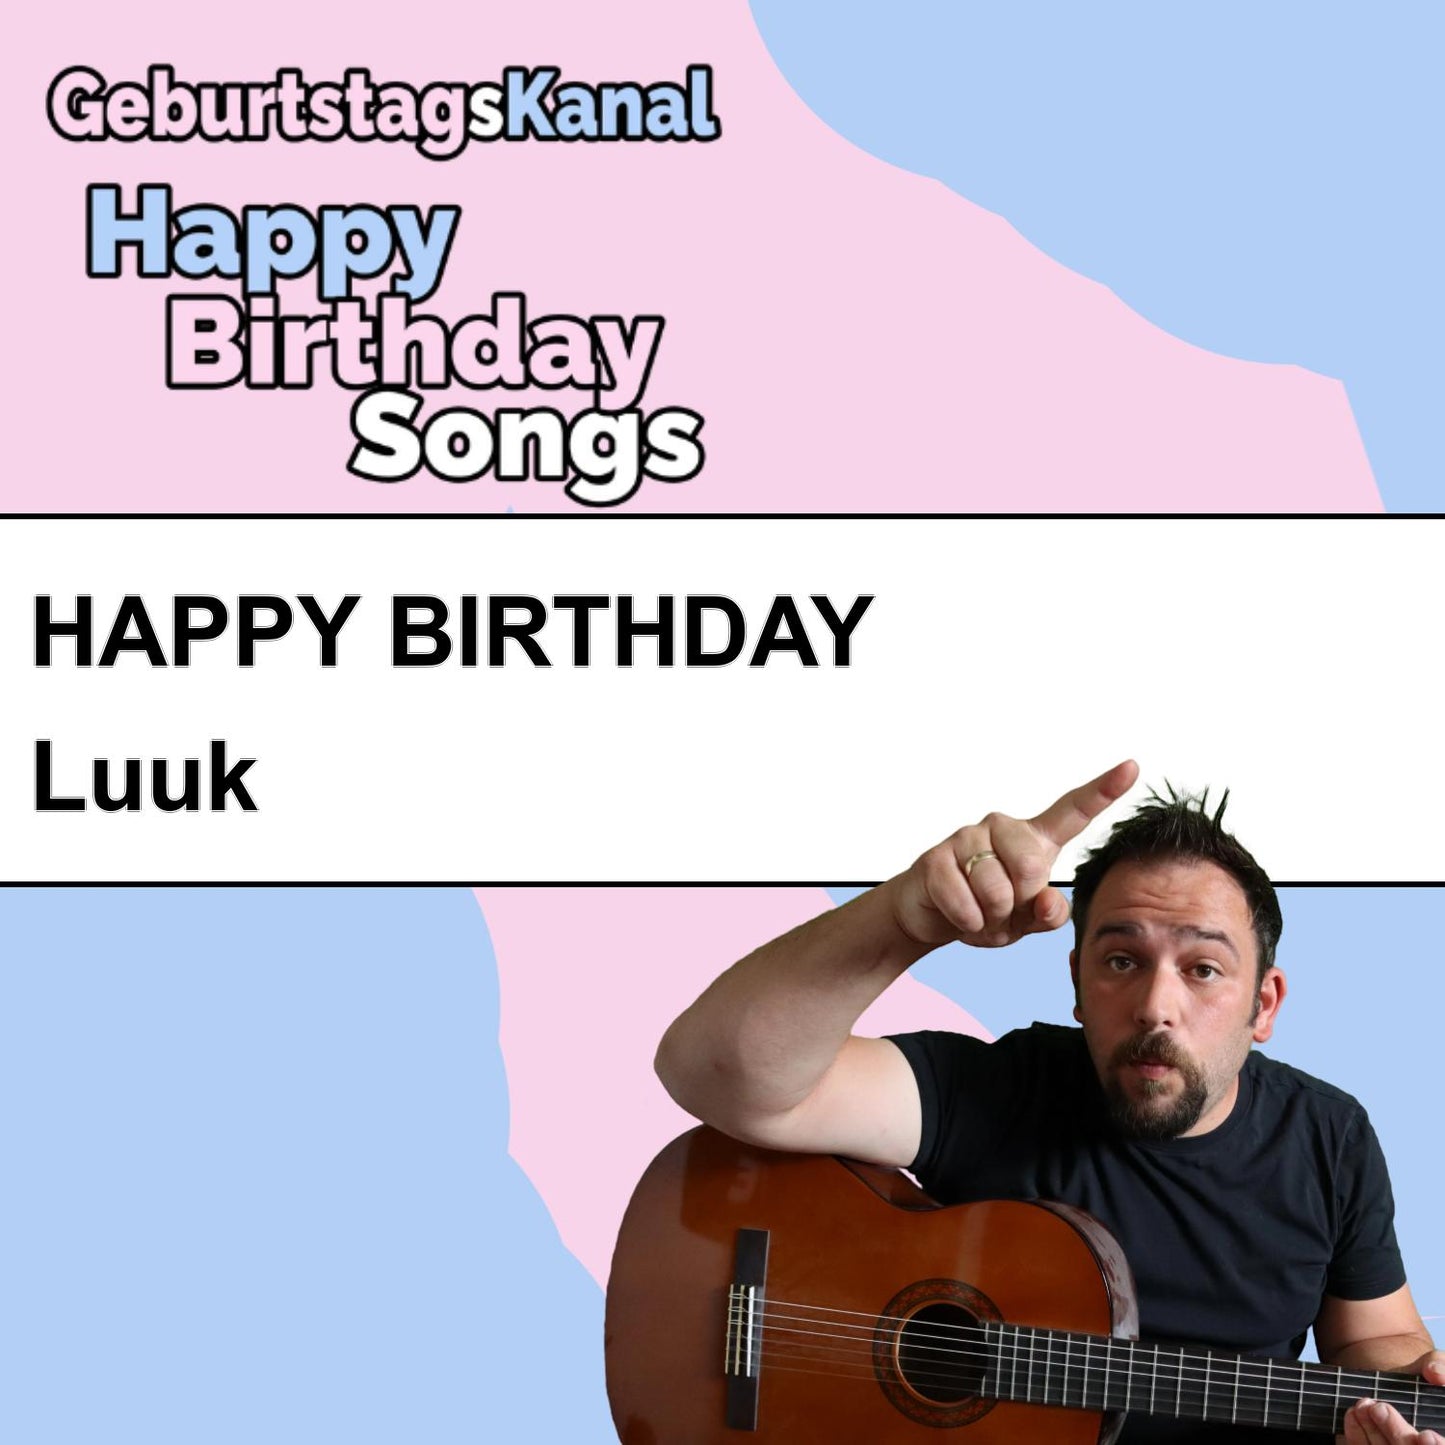 Produktbild Happy Birthday to you Luuk mit Wunschgrußbotschaft